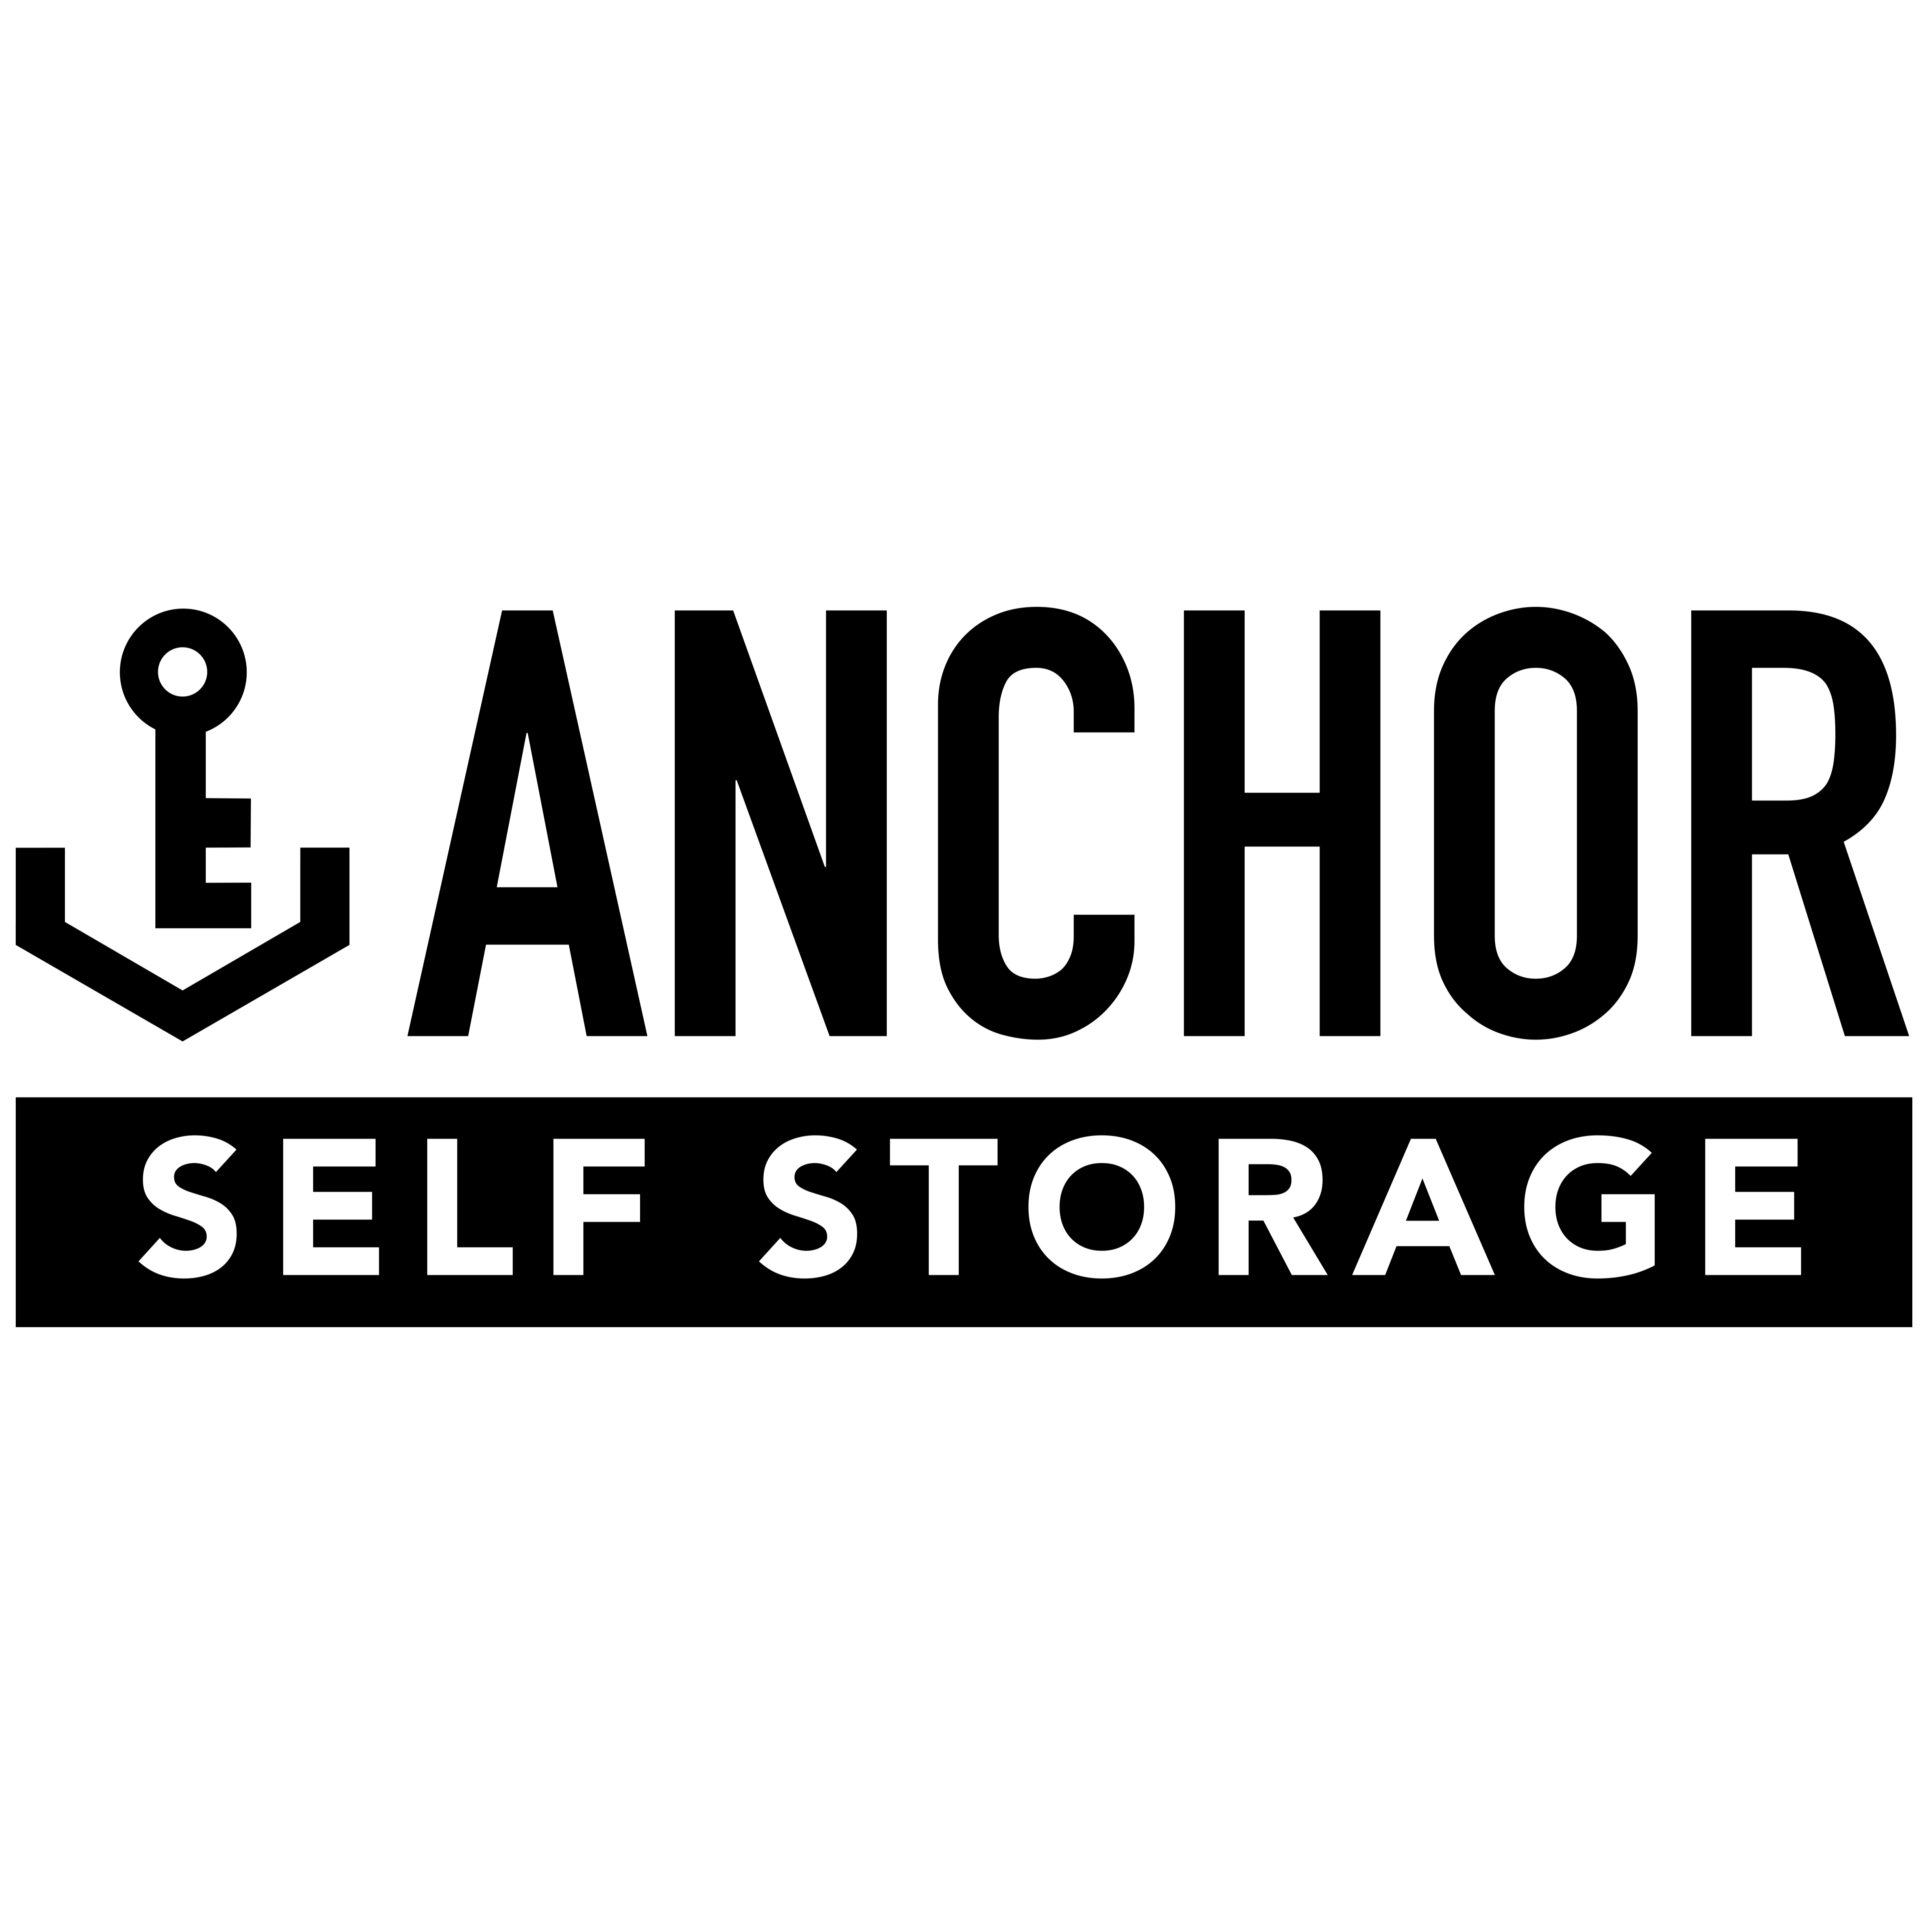 Anchor Self Storage of Huntersville